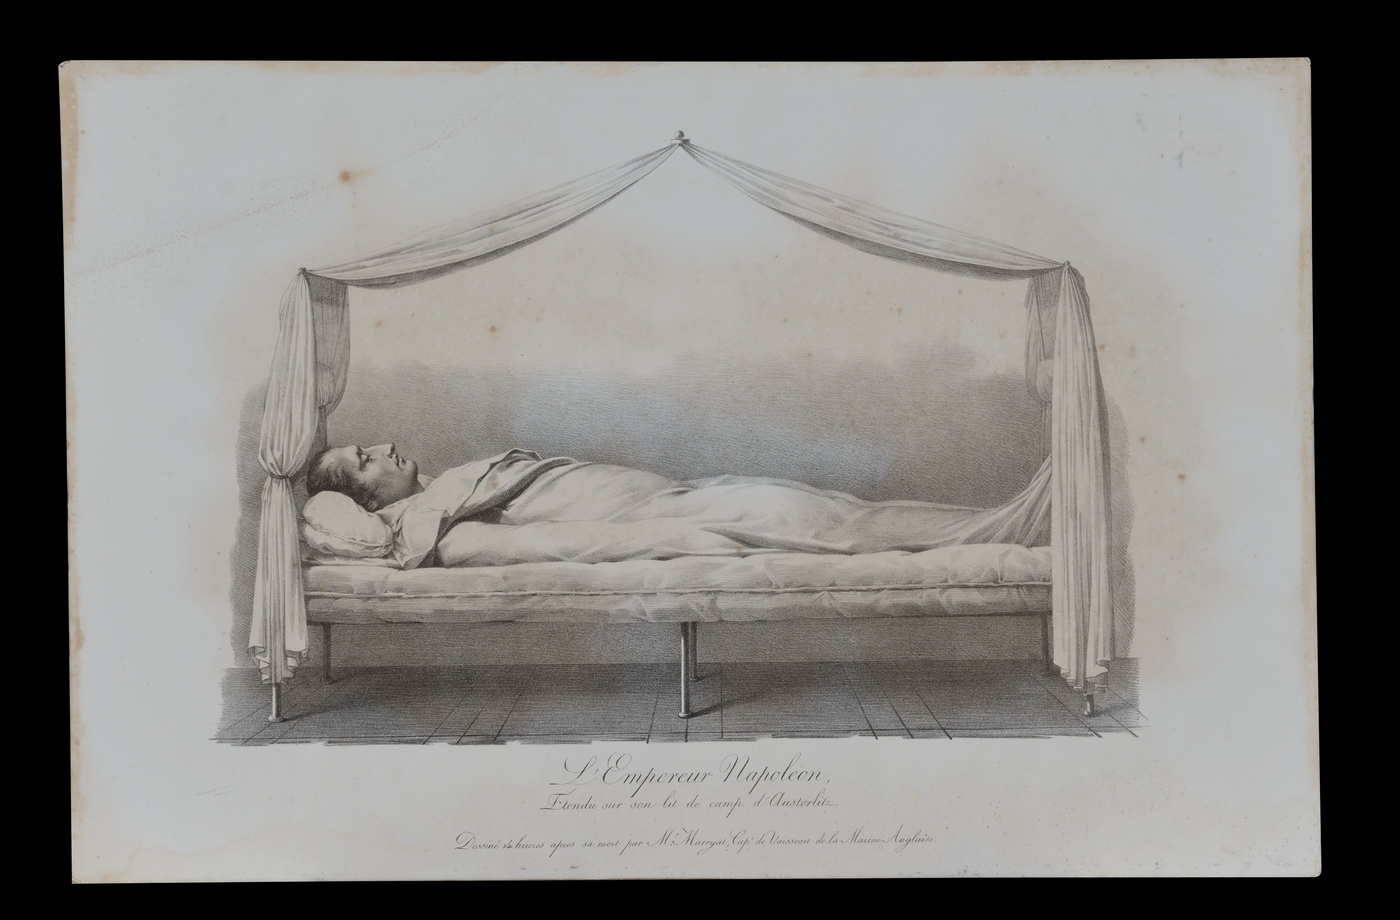 L'Empereur Napoléon étendu sur son lit de camp d'Austerlitz - Patrimoine Charles-André COLONNA WALEWSKI, en ligne directe de Napoléon